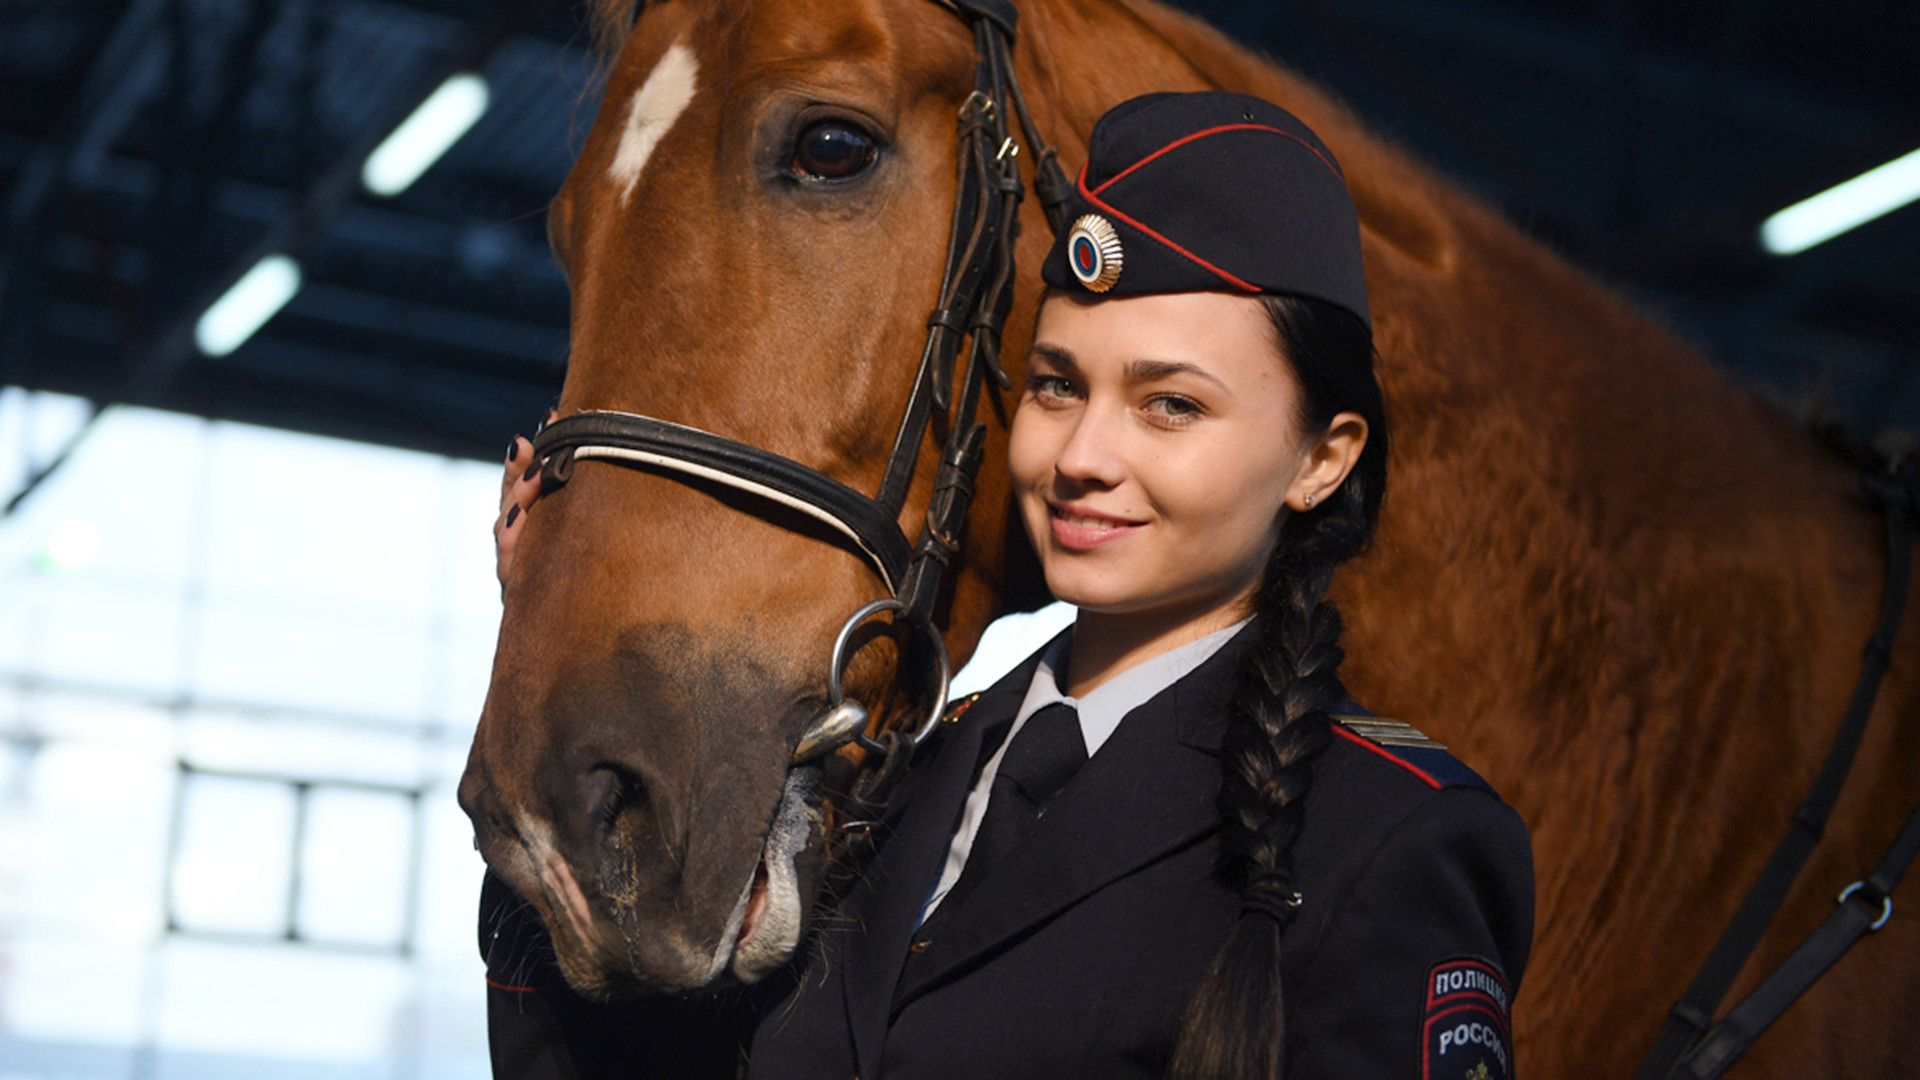 美しい騎馬警官がネット上で大きな話題に ロシア ビヨンド